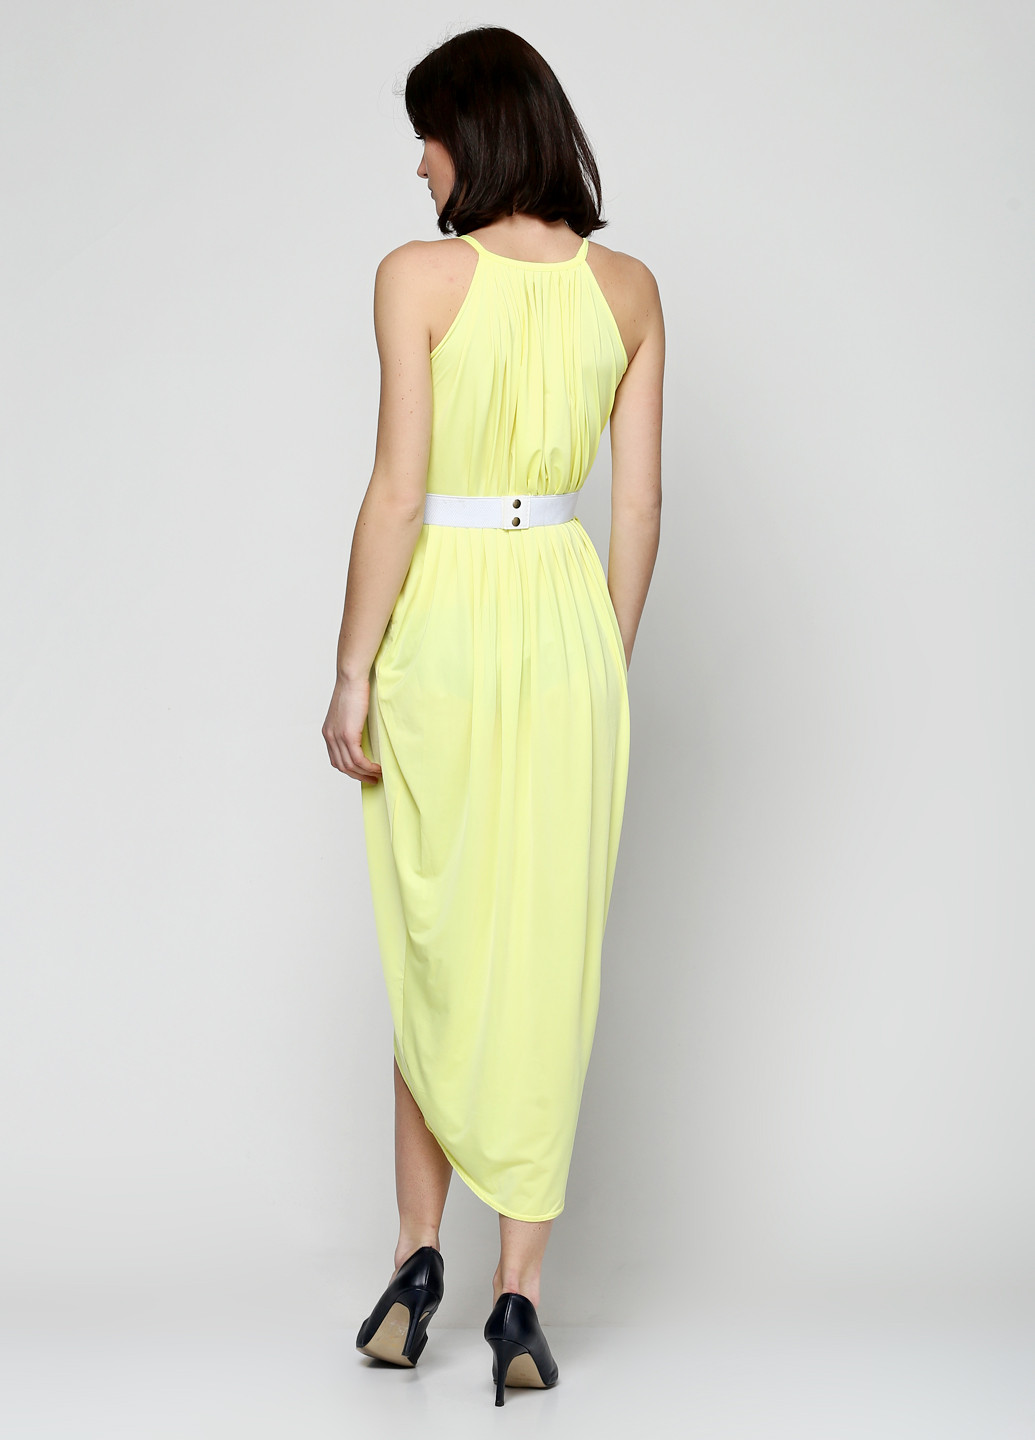 Лимонное кэжуал платье Колибри S